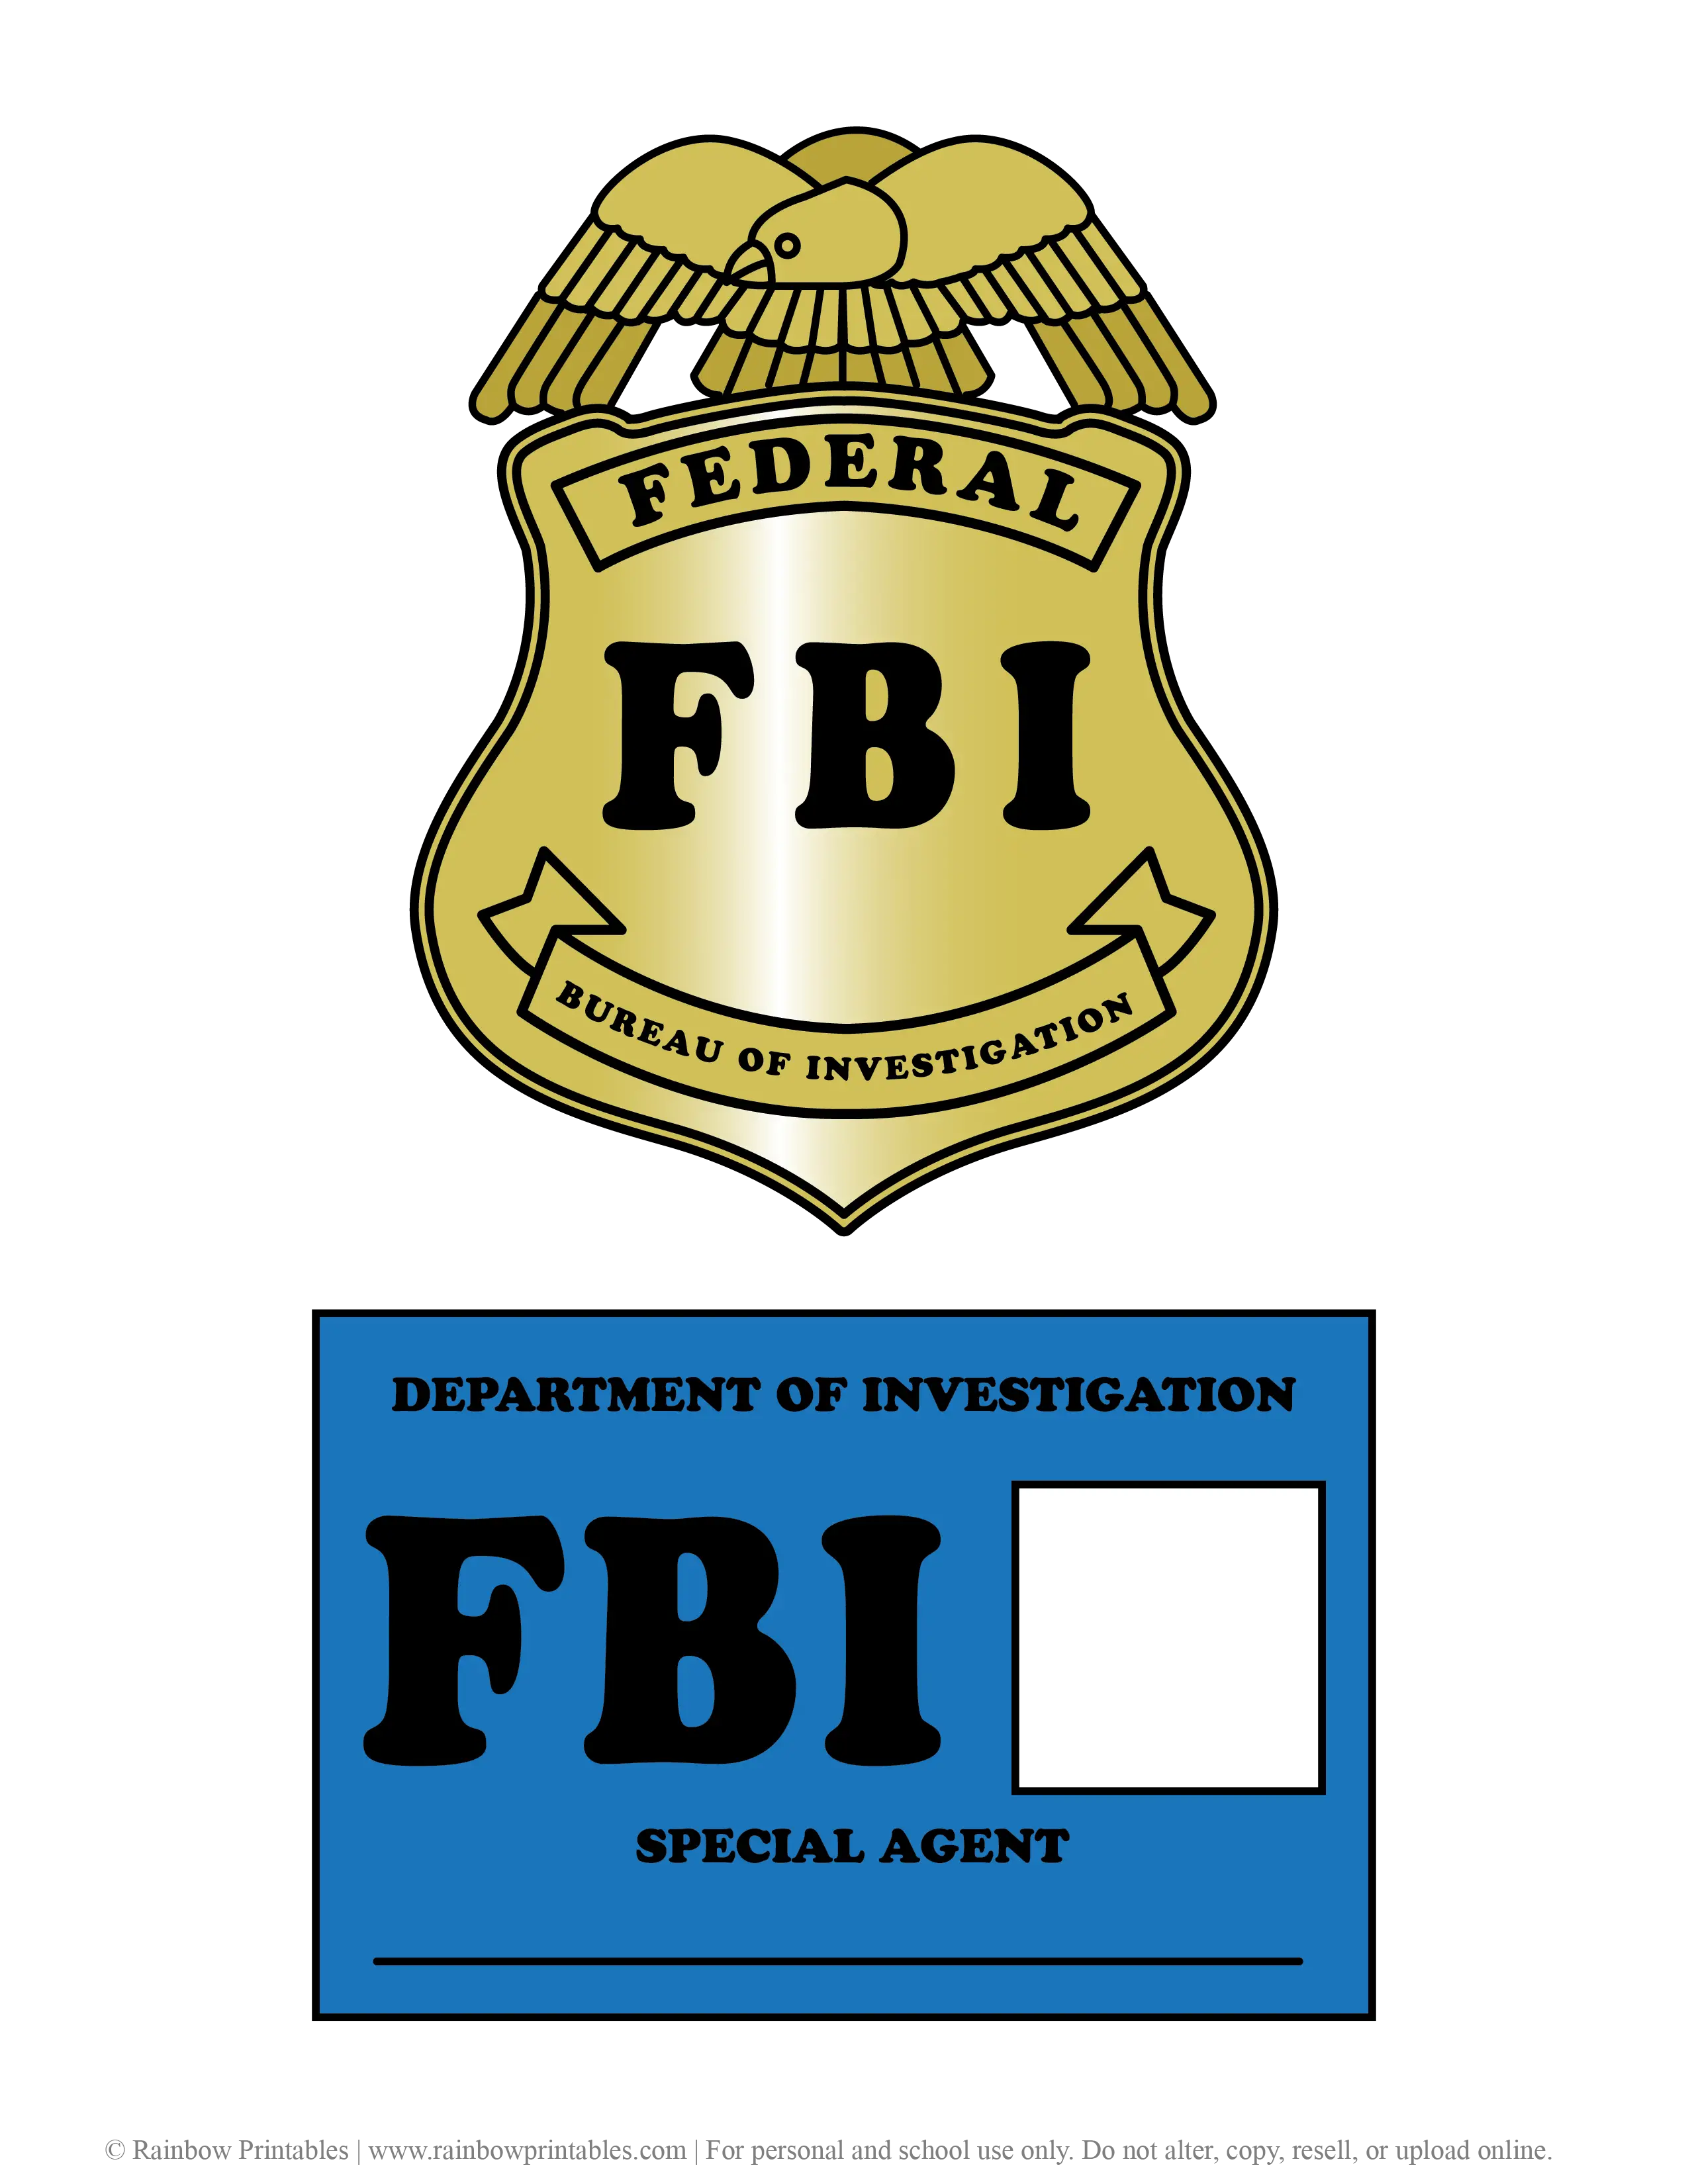 Kid Mock FBI Government Officer Agent Federal Bureau Investigation Badges License Printable Costume Play